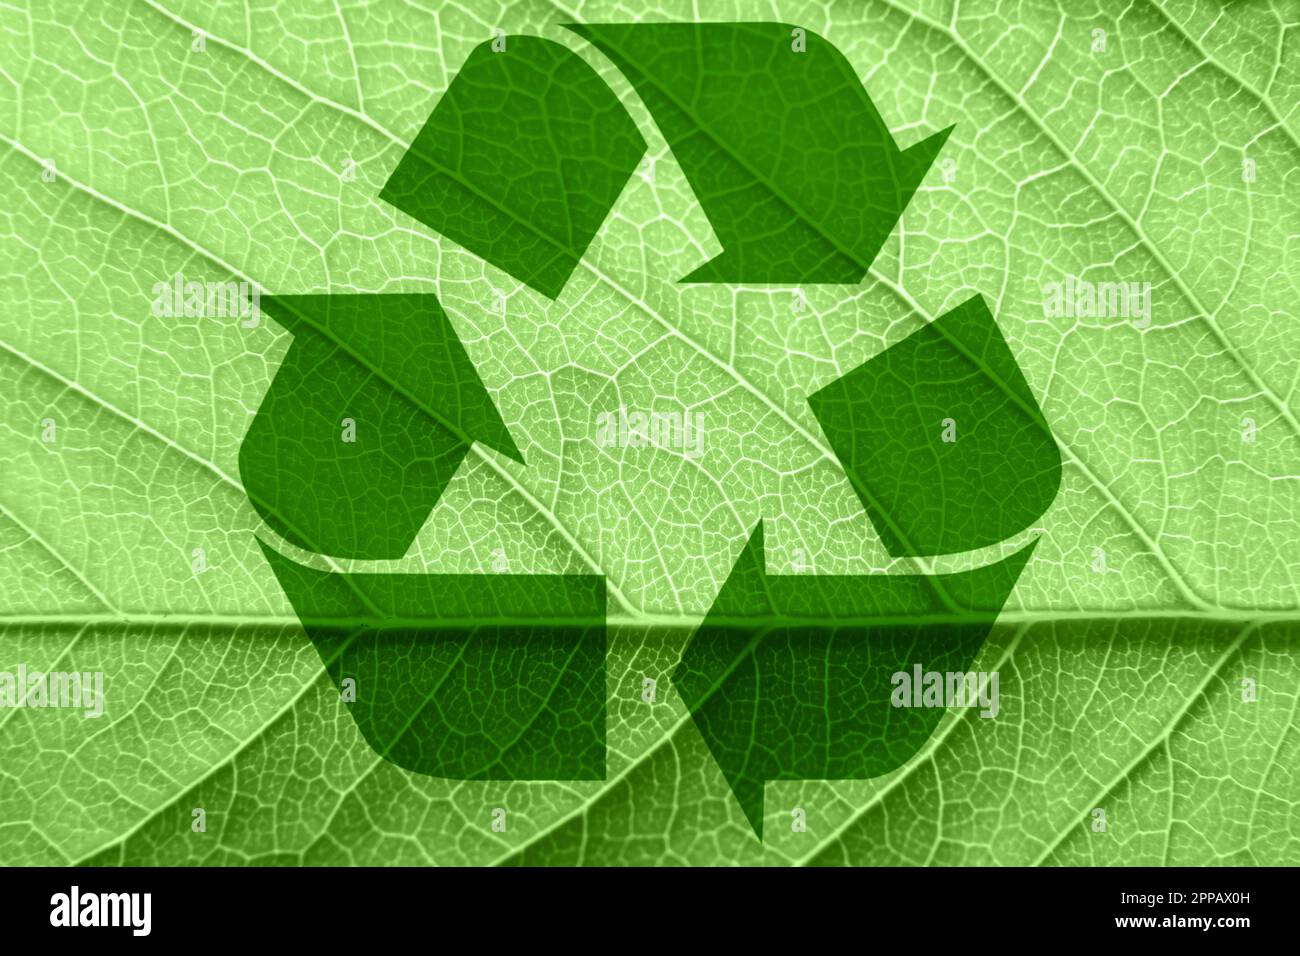 Symbole de recyclage sur une feuille verte. Photo de haute qualité Banque D'Images